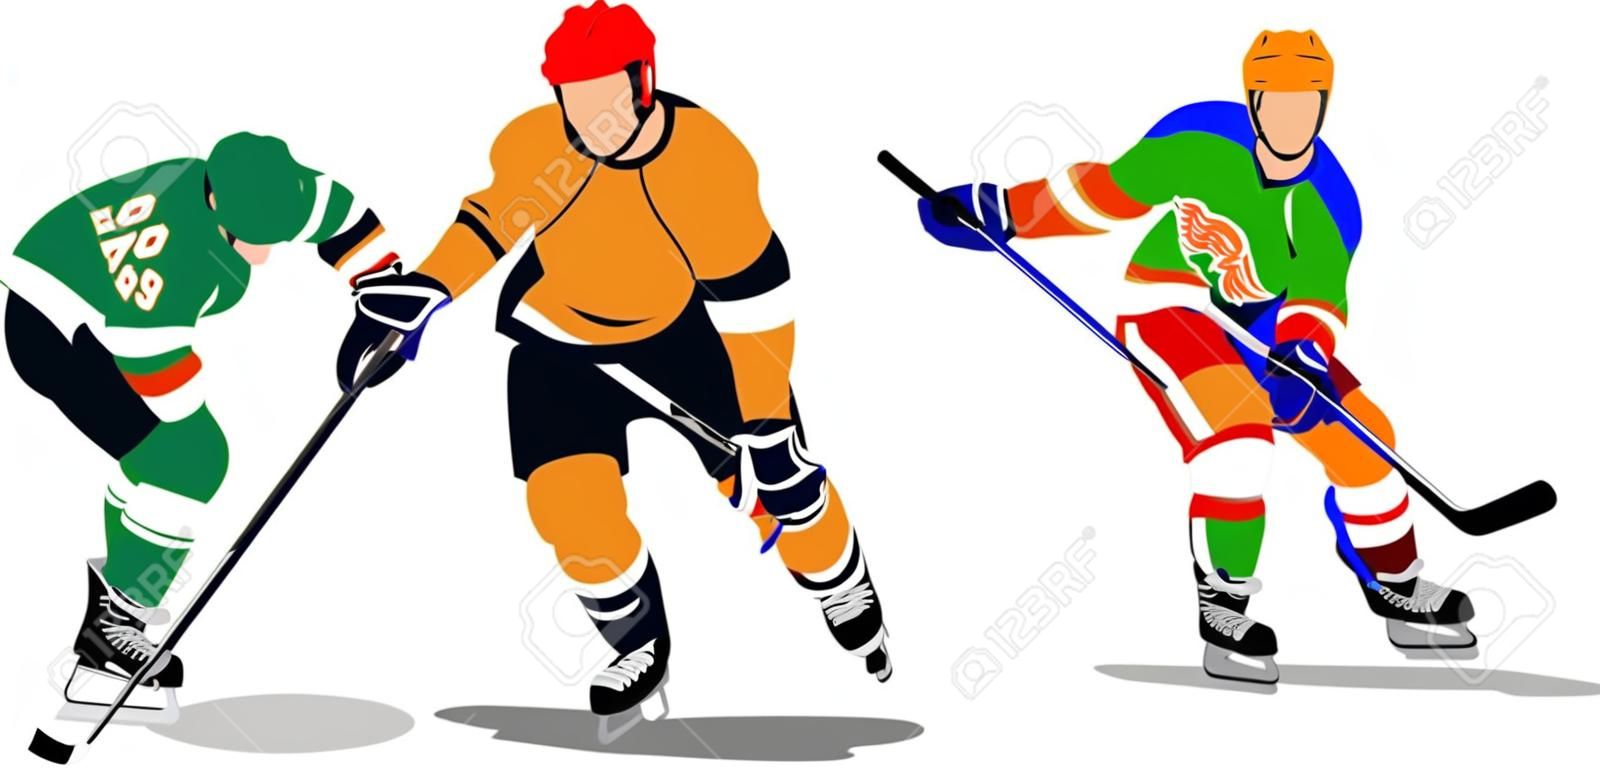 Eishockey-Spieler. Farbige Vector illustration für Designer